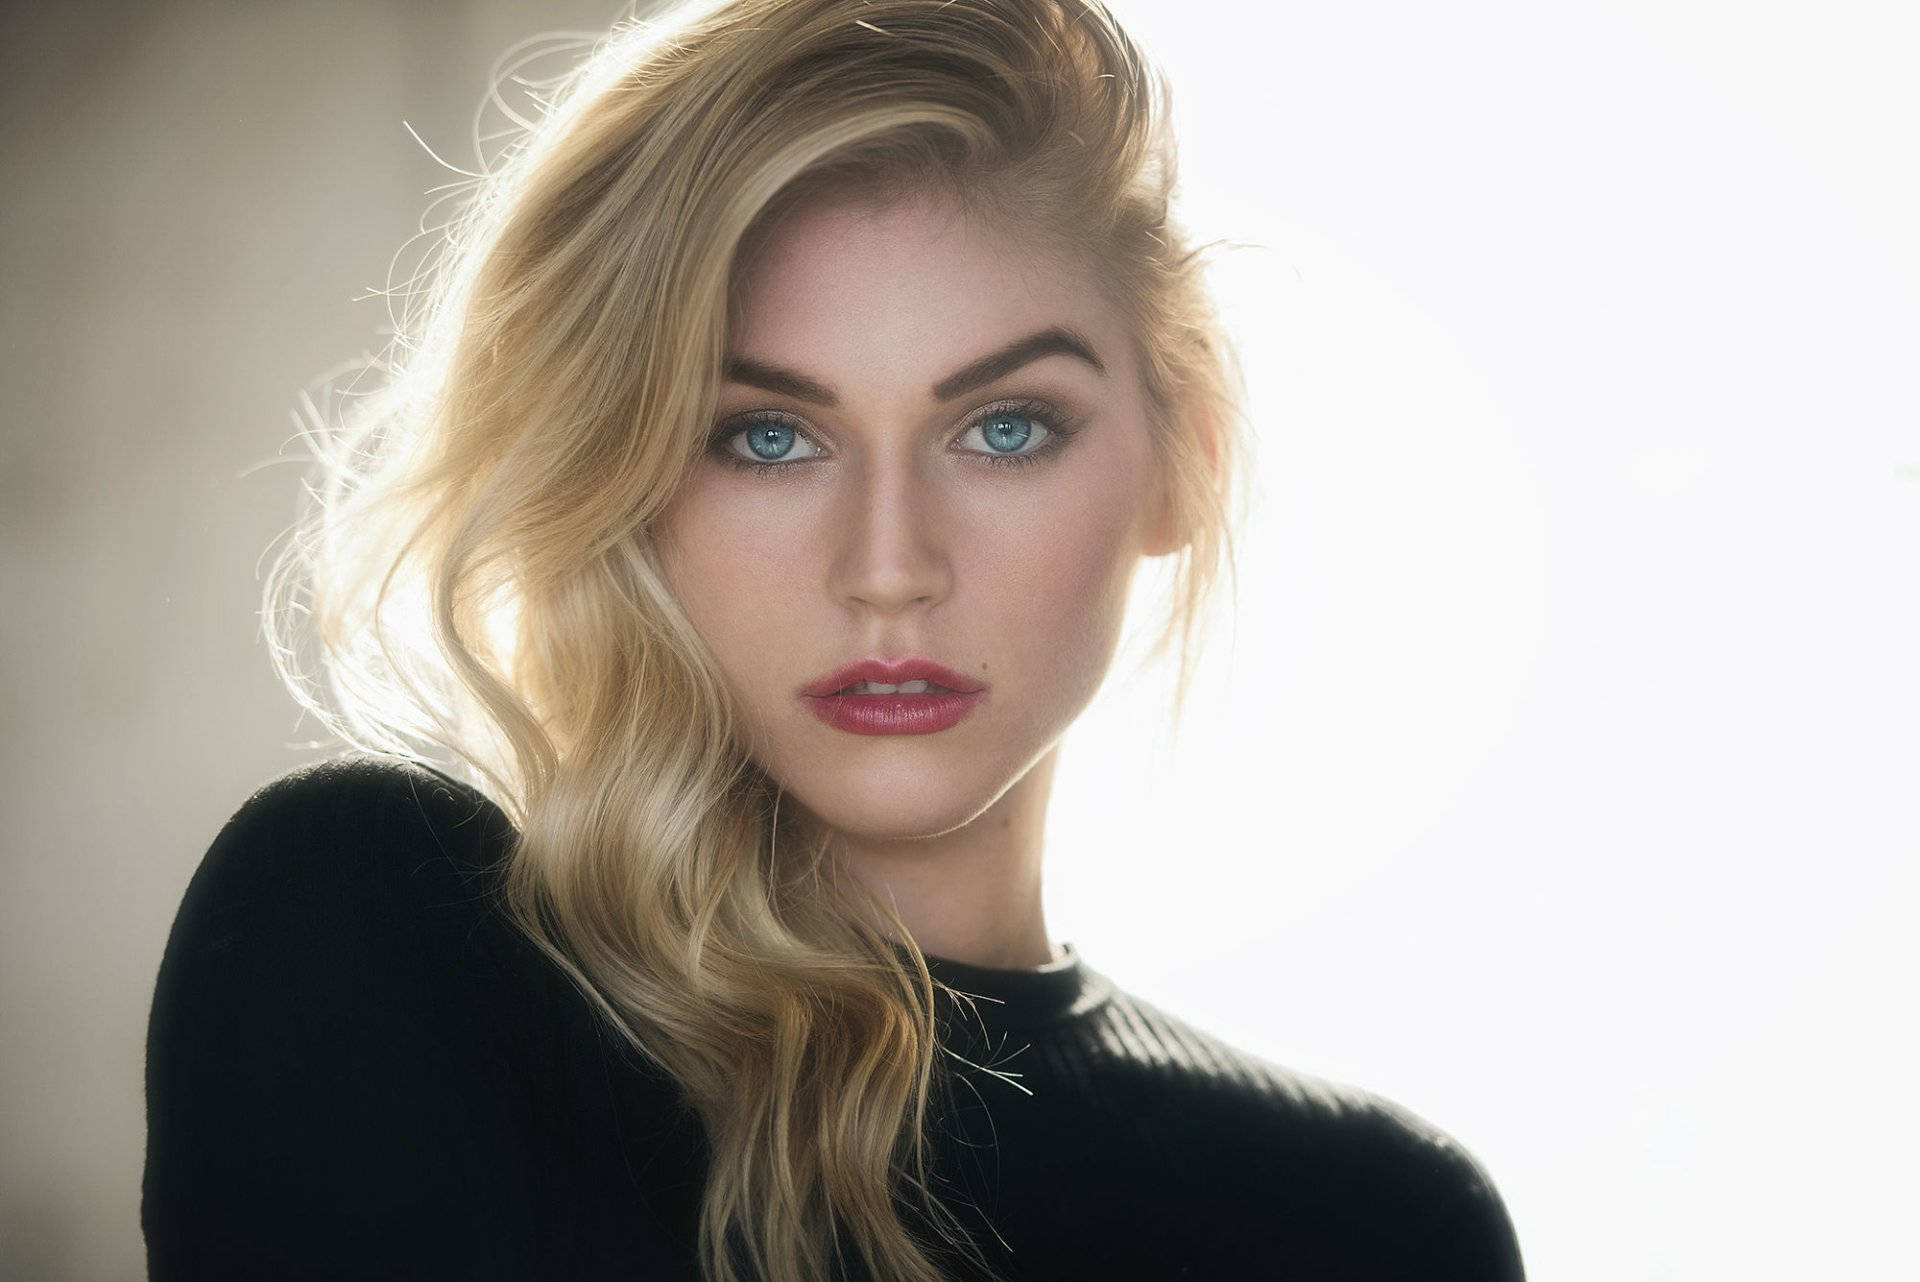 Blondesweibliches Model Mit Geschwungenen Augenbrauen. Wallpaper